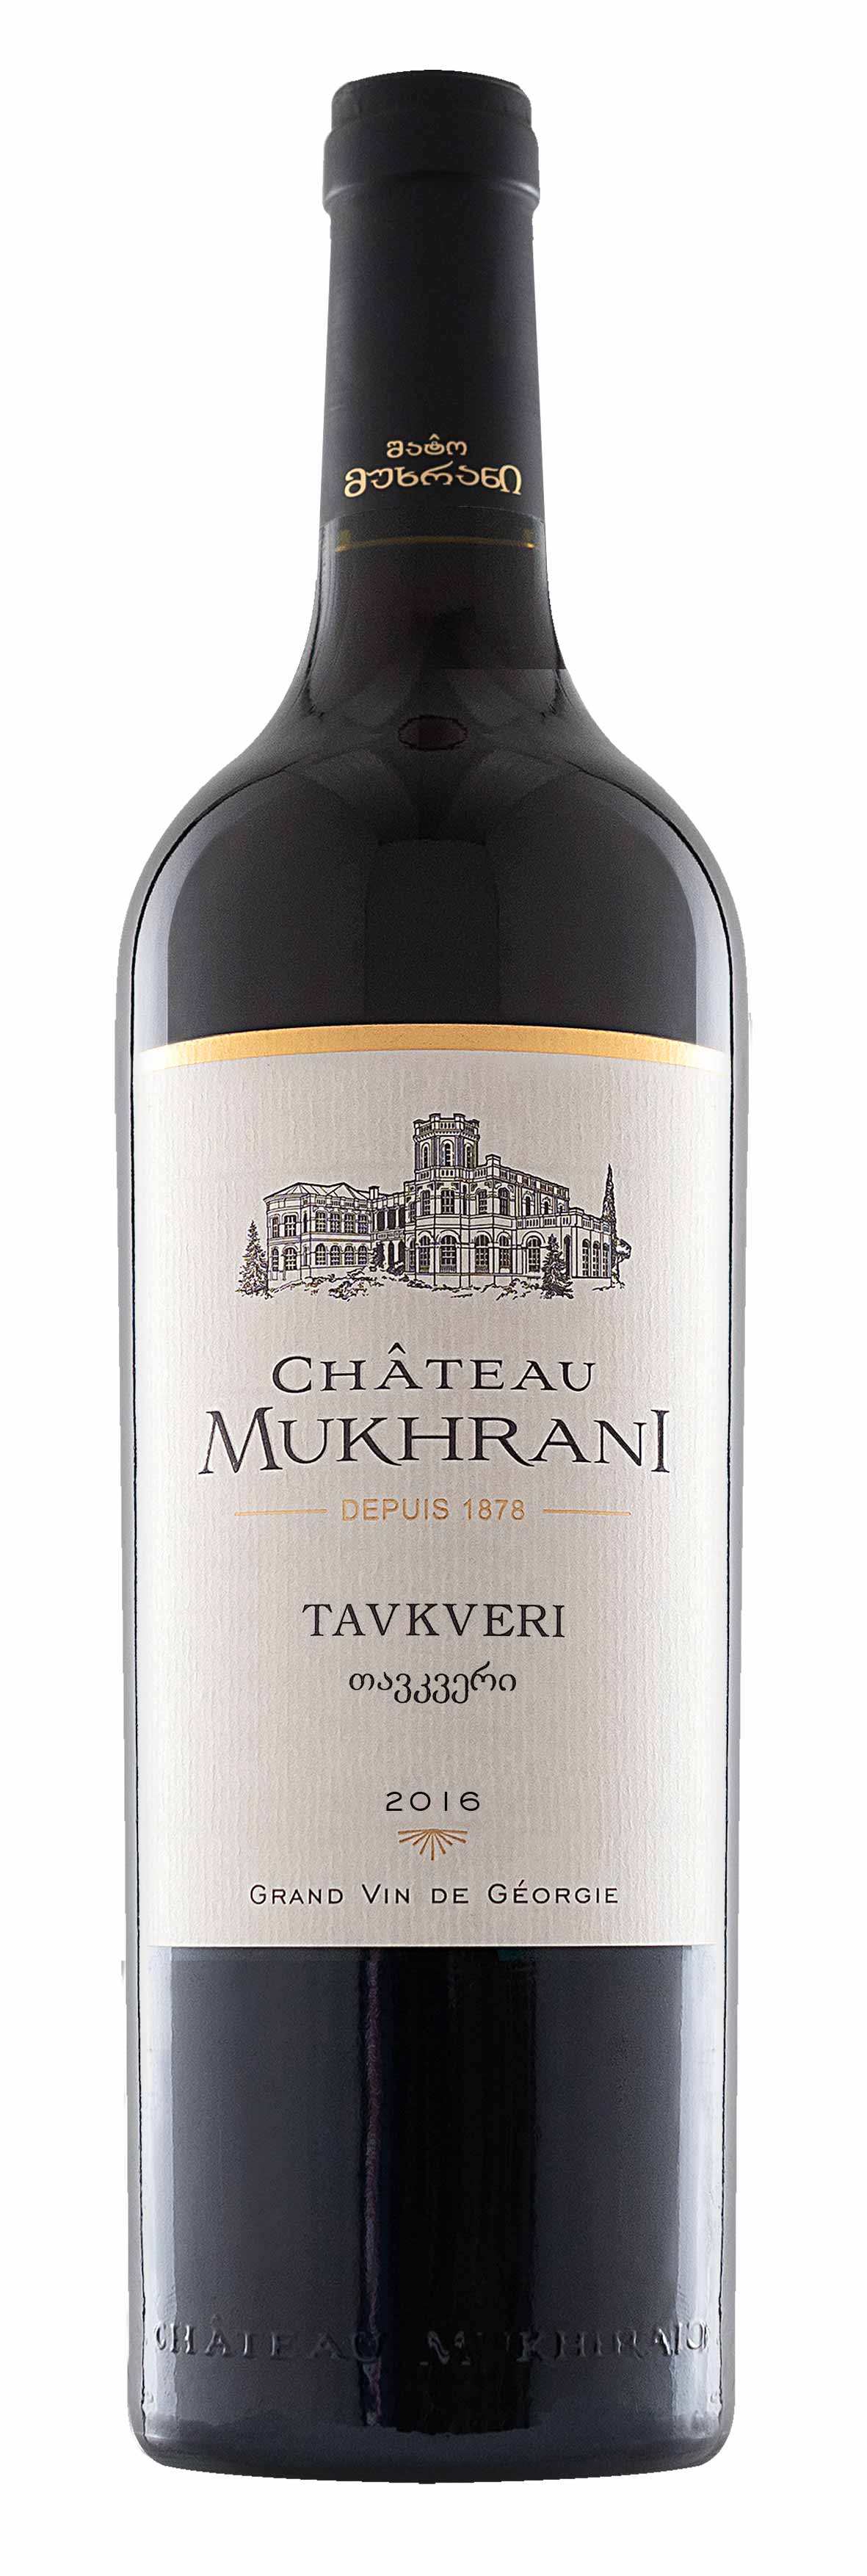 Château Mukhrani Tavkveri Rotwein trocken Georgien